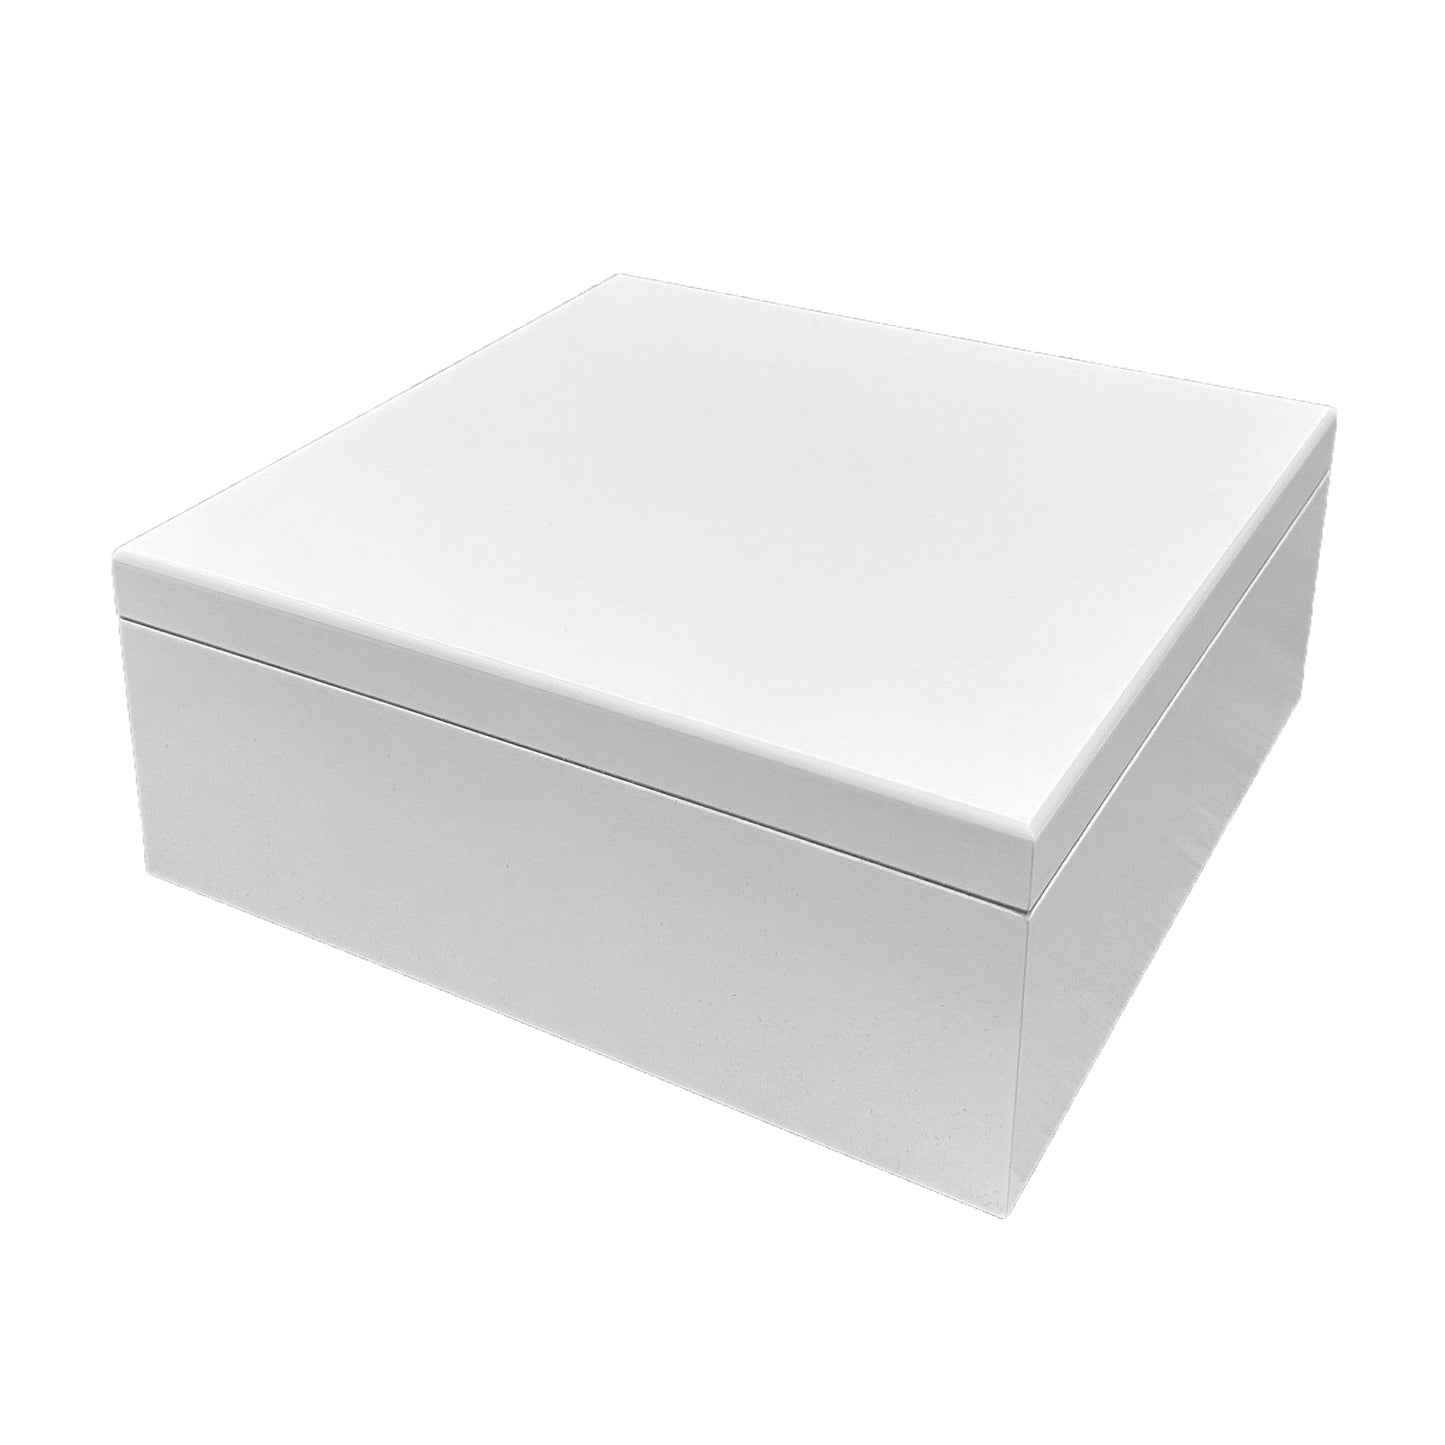 White - Large Wood Box